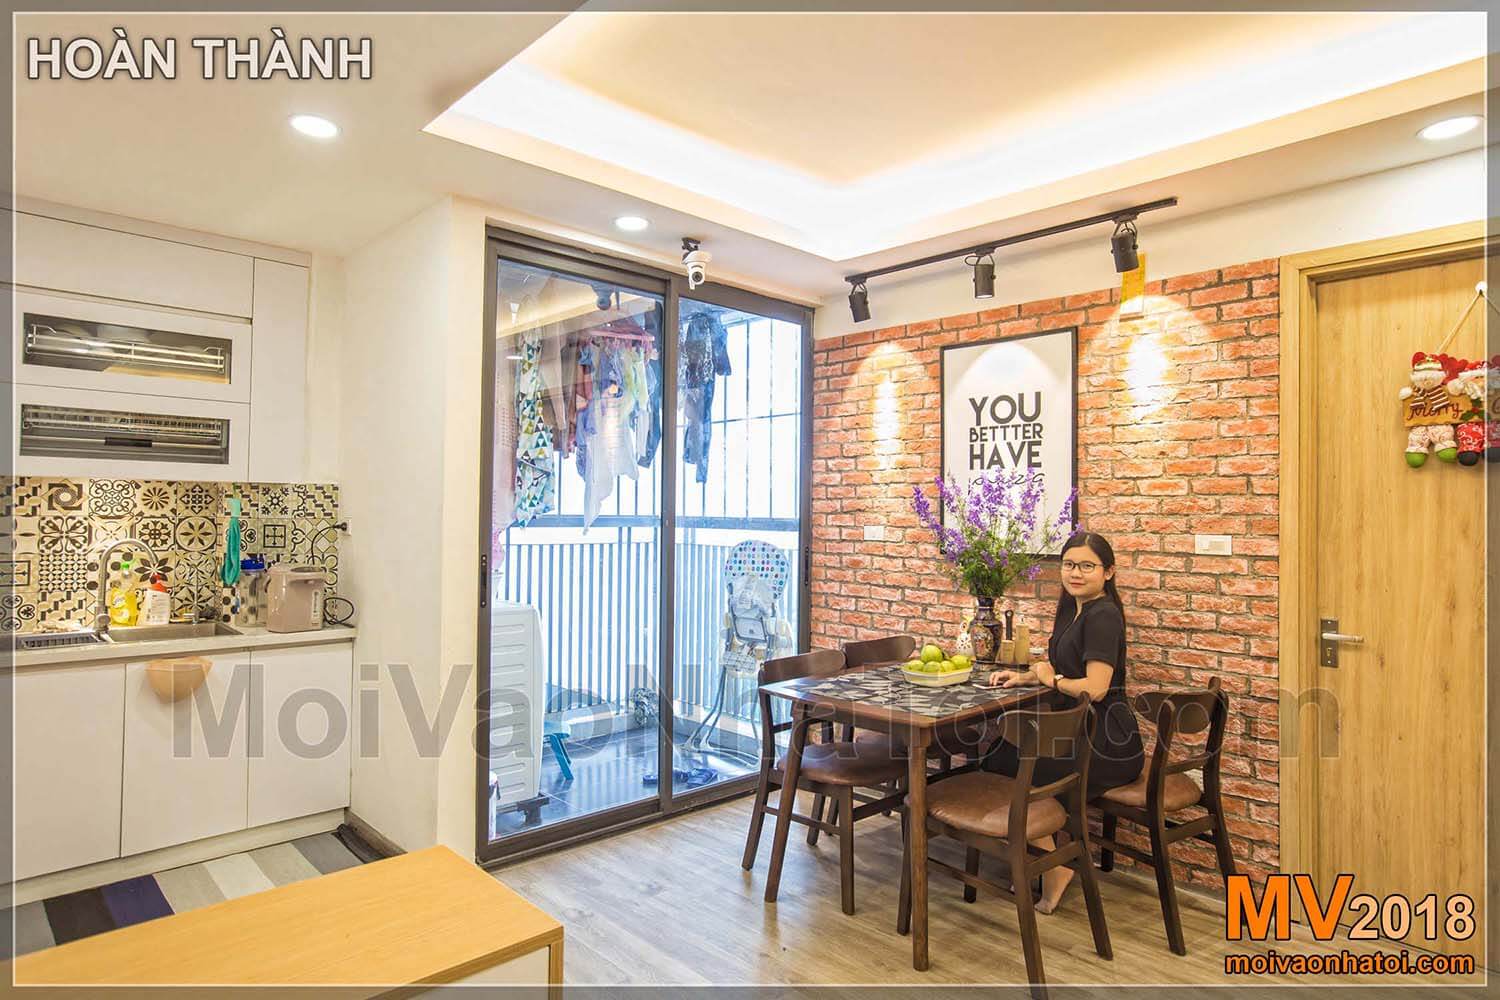 Desain konstruksi interior bangunan apartemen urban Dang Xa Gia Lam